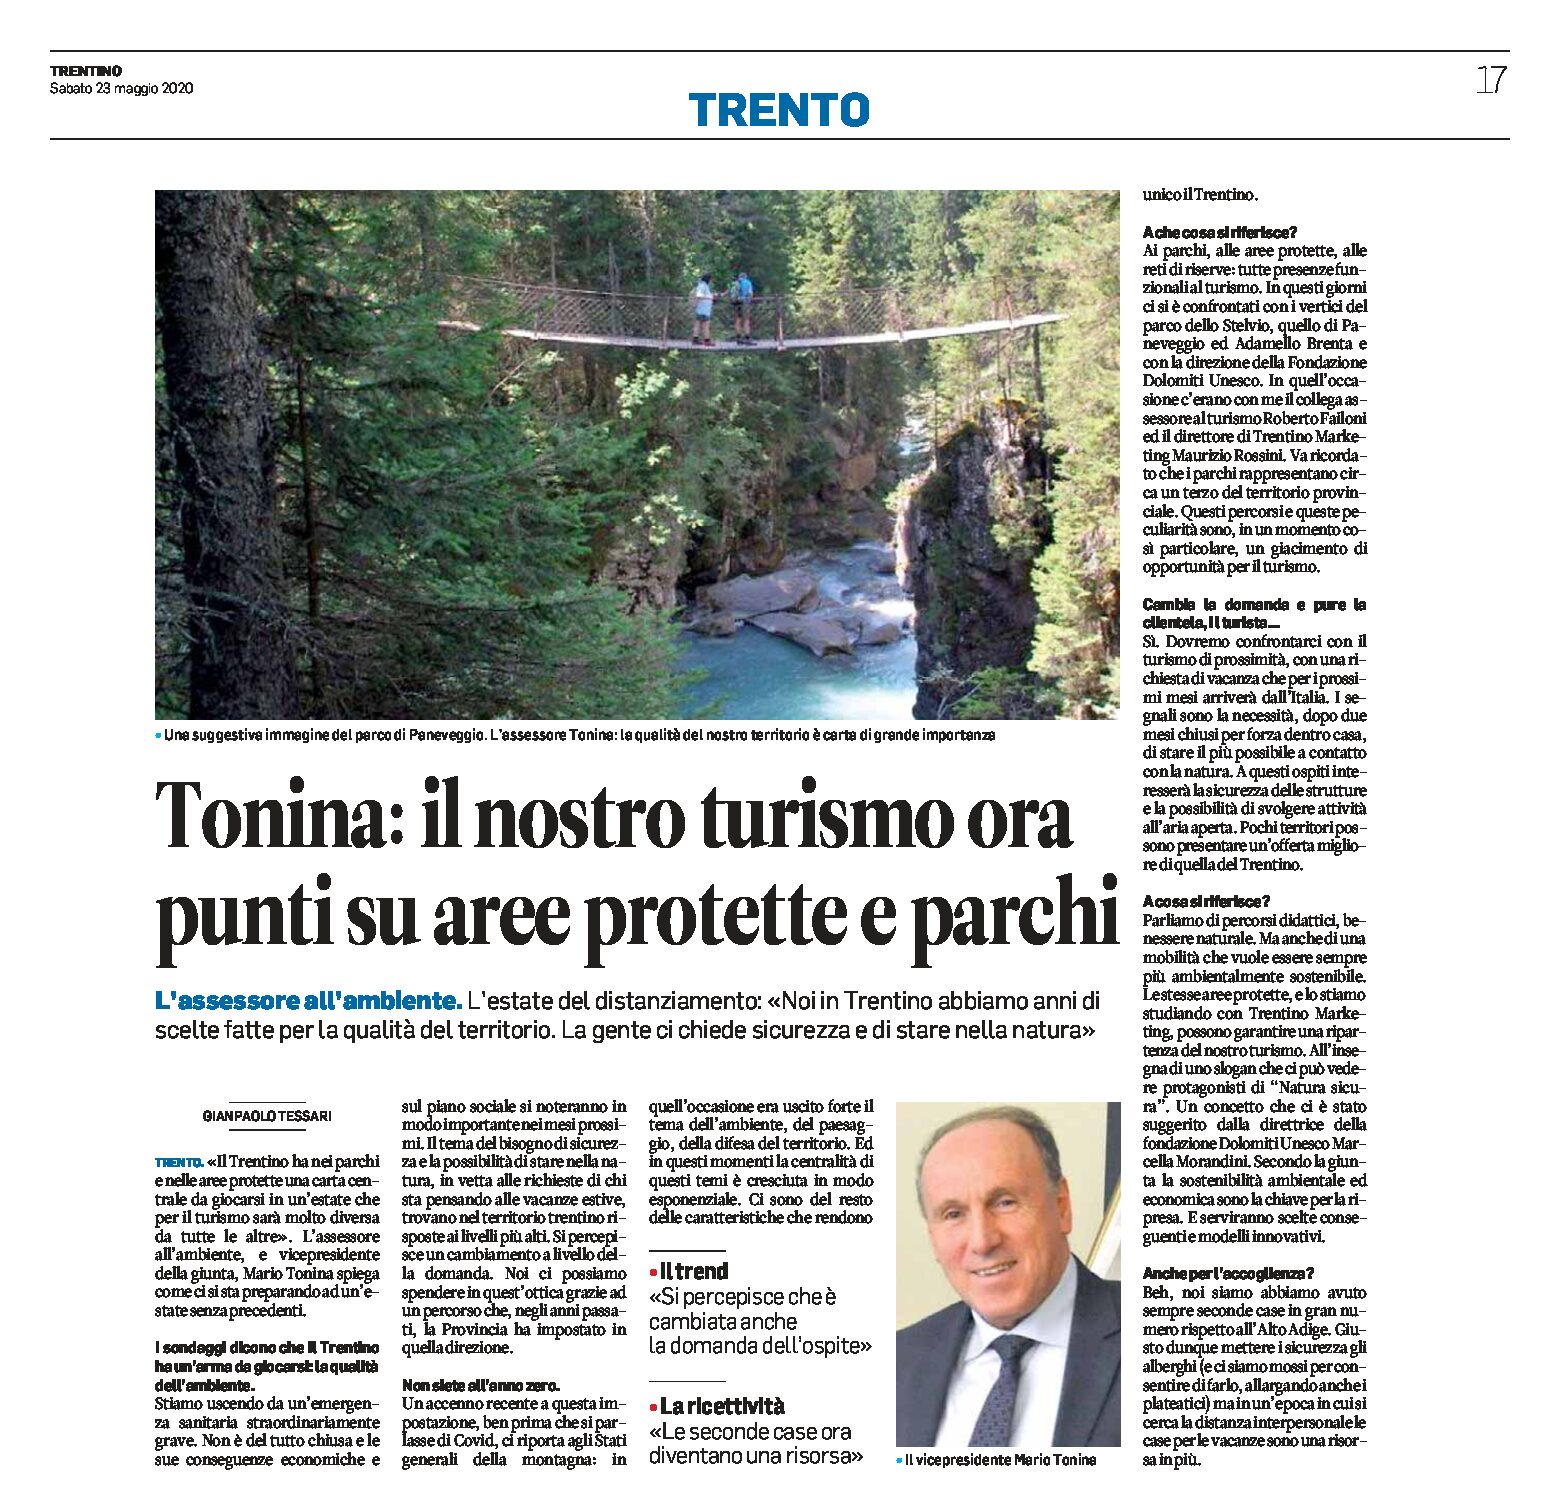 Tonina: il nostro turismo ora punti su aree protette e parchi